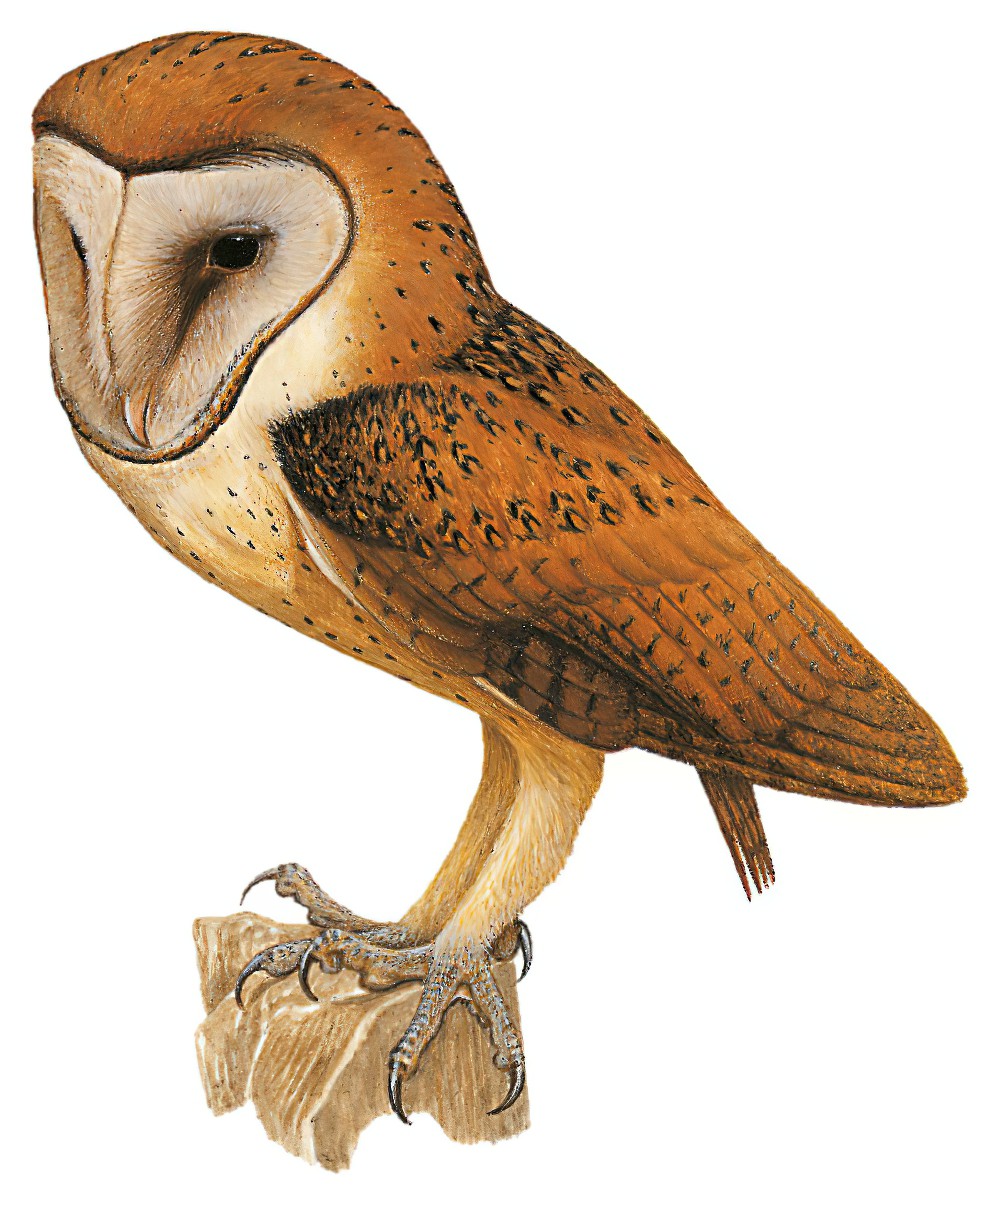 Minahassa Masked-Owl / Tyto inexspectata